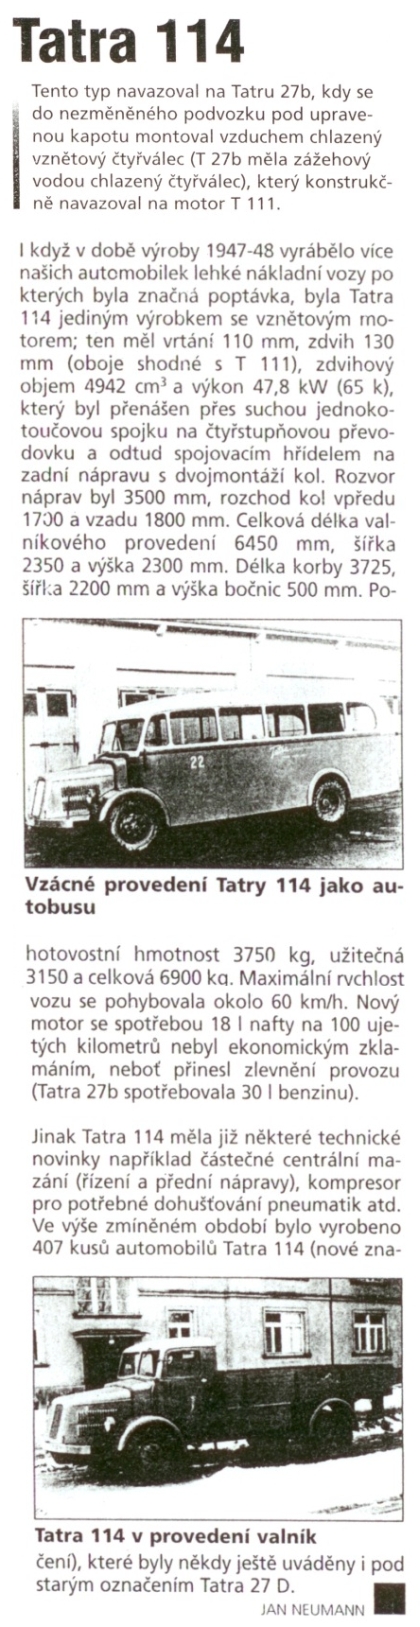 Z archivu Vlastimila Tělupila: 'Otrhánek' aneb autobus Tatra 114 STS Hustopeče